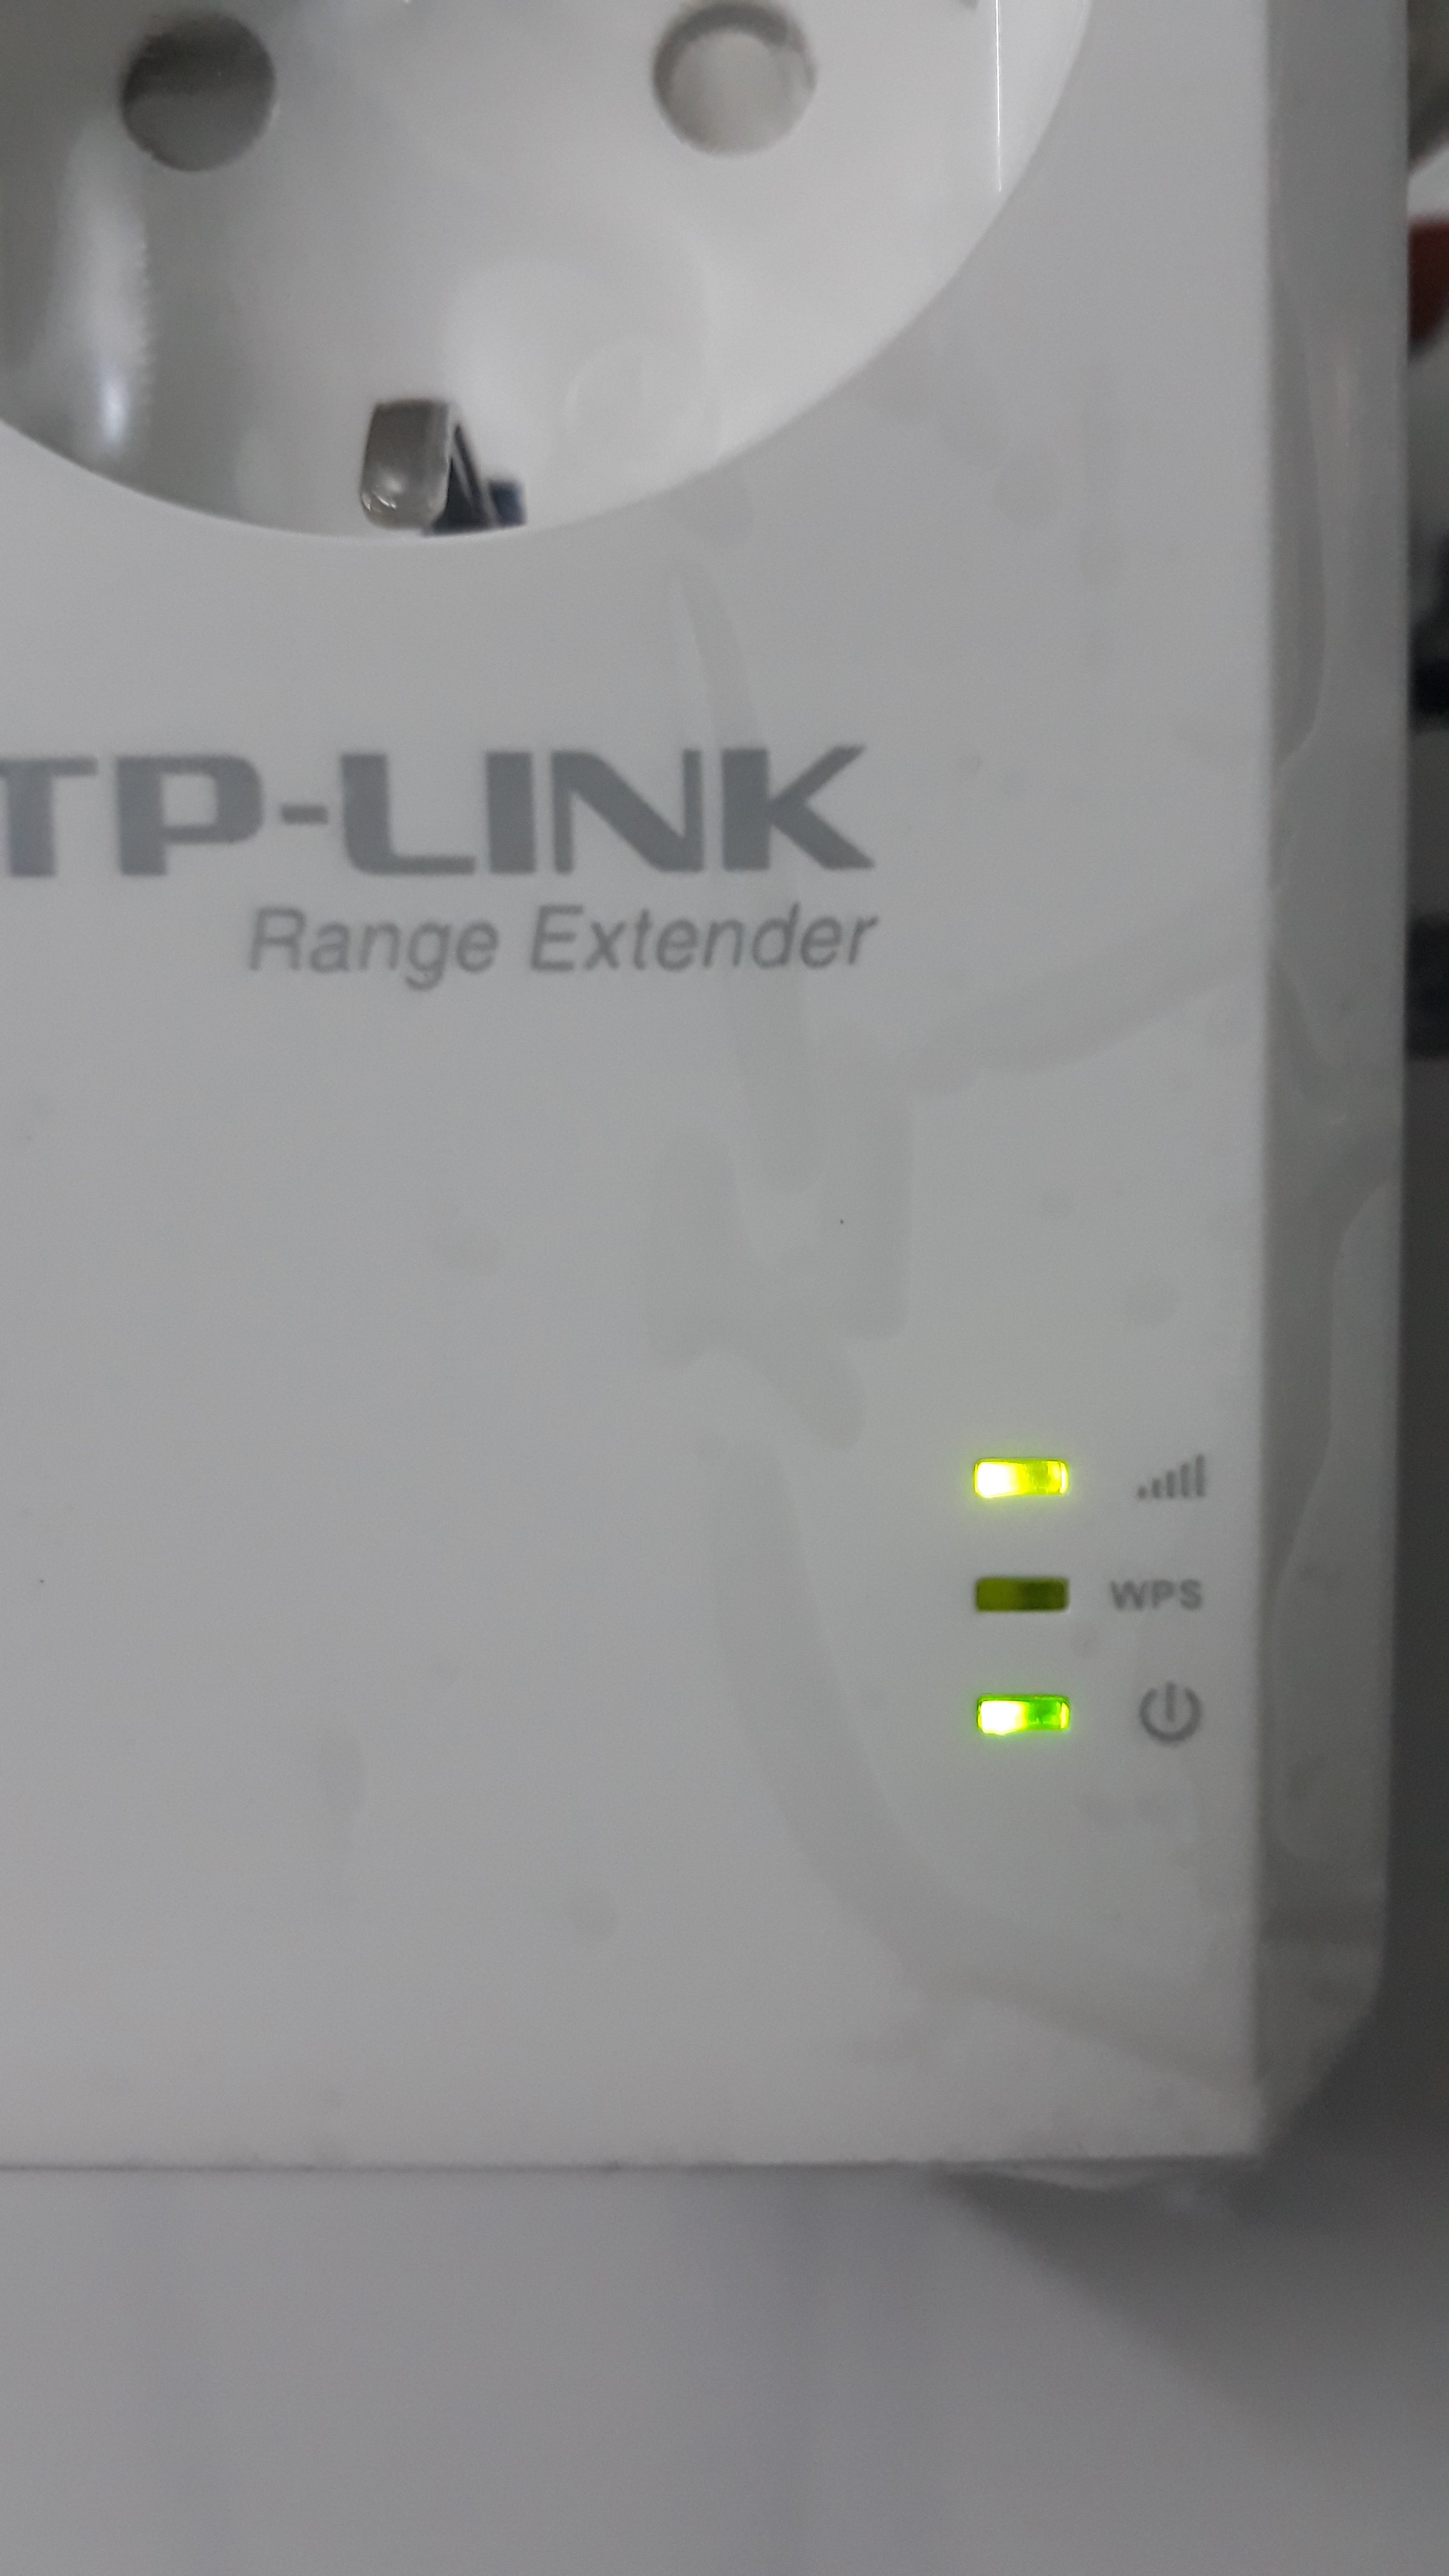 Hỏi về đèn và nút WPS trên bộ kích sóng Wifi TPLink